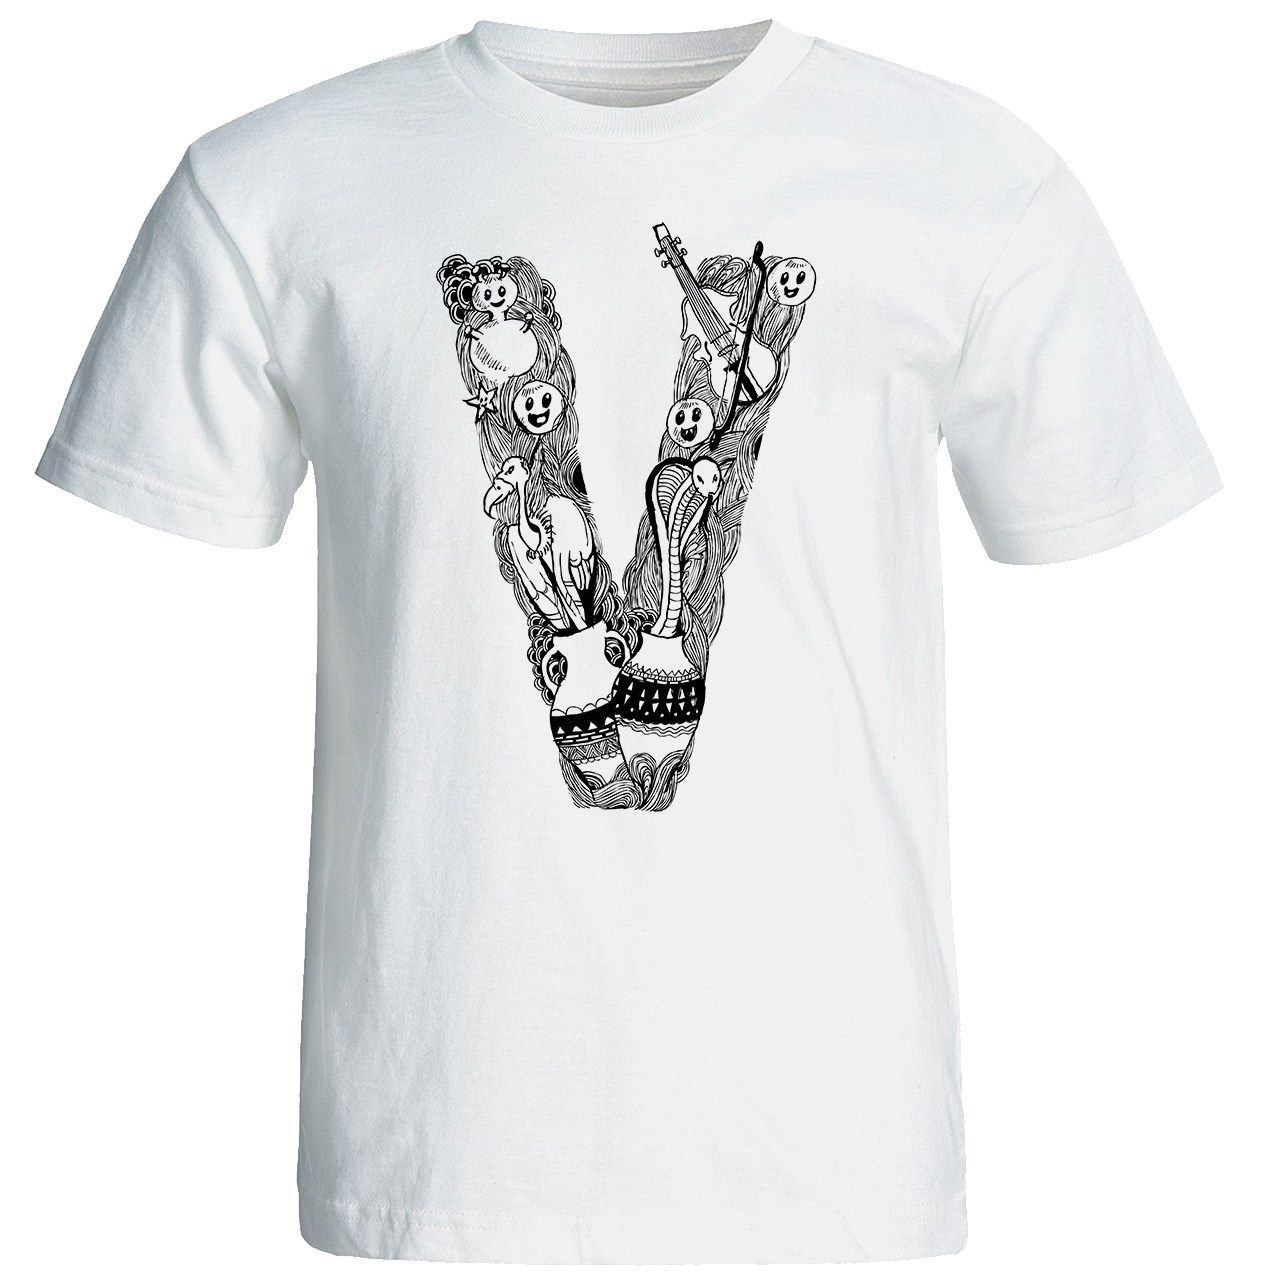 تی شرت آستین کوتاه مردانه شین دیزاین طرح حروف اول اسم V کد 4487 -  - 1